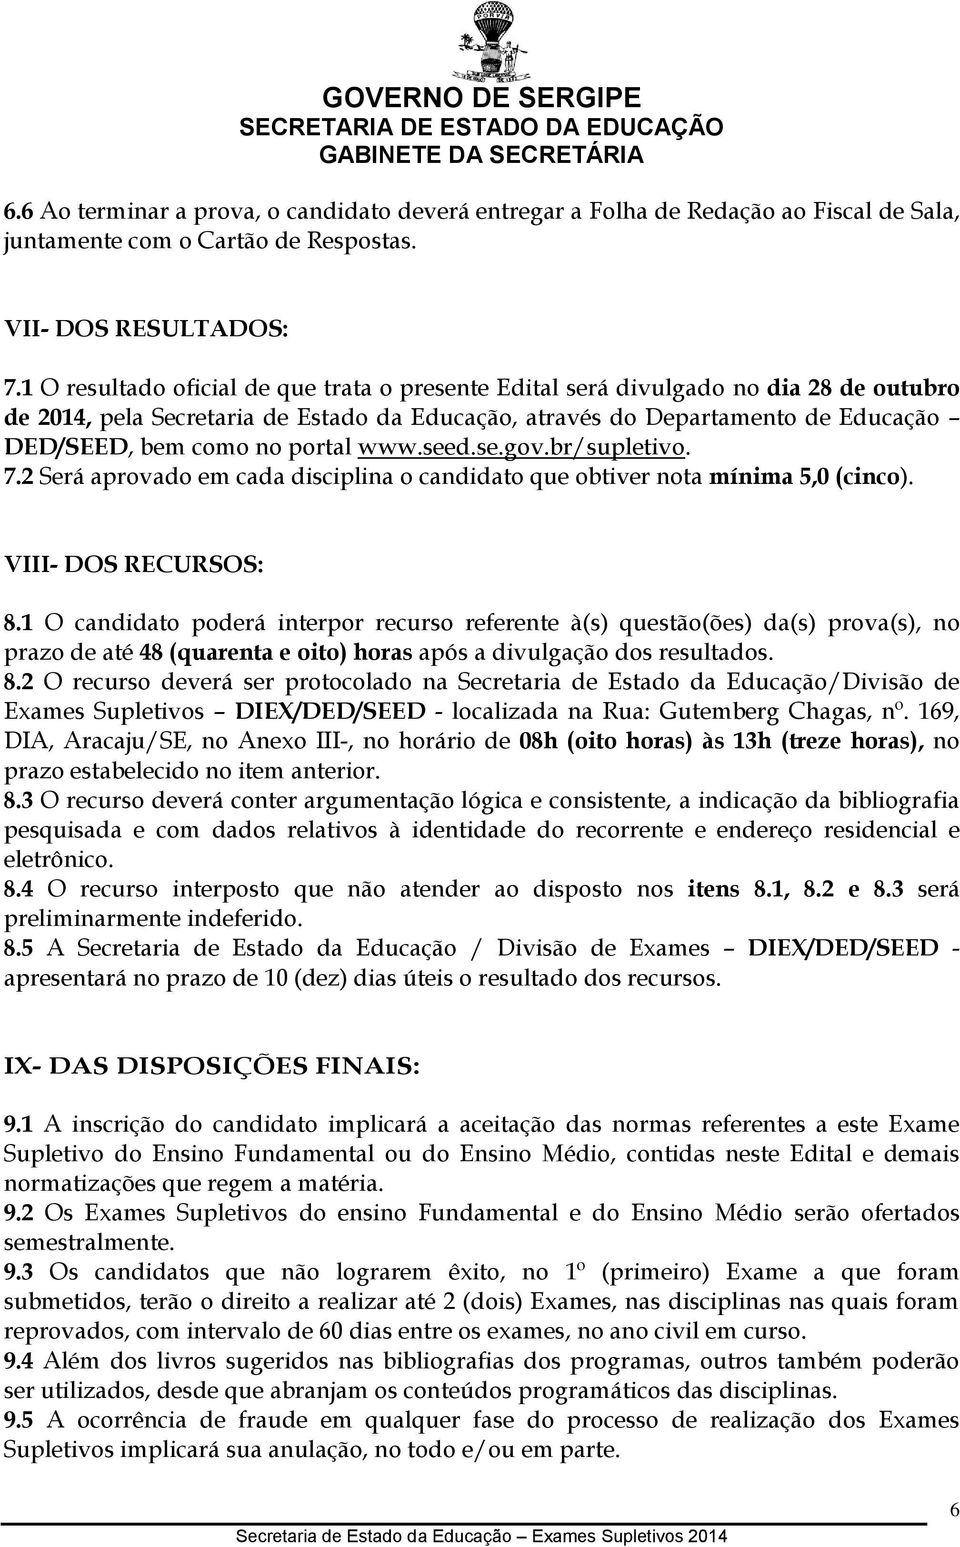 portal www.seed.se.gov.br/supletivo. 7.2 Será aprovado em cada disciplina o candidato que obtiver nota mínima 5,0 (cinco). VIII- DOS RECURSOS: 8.